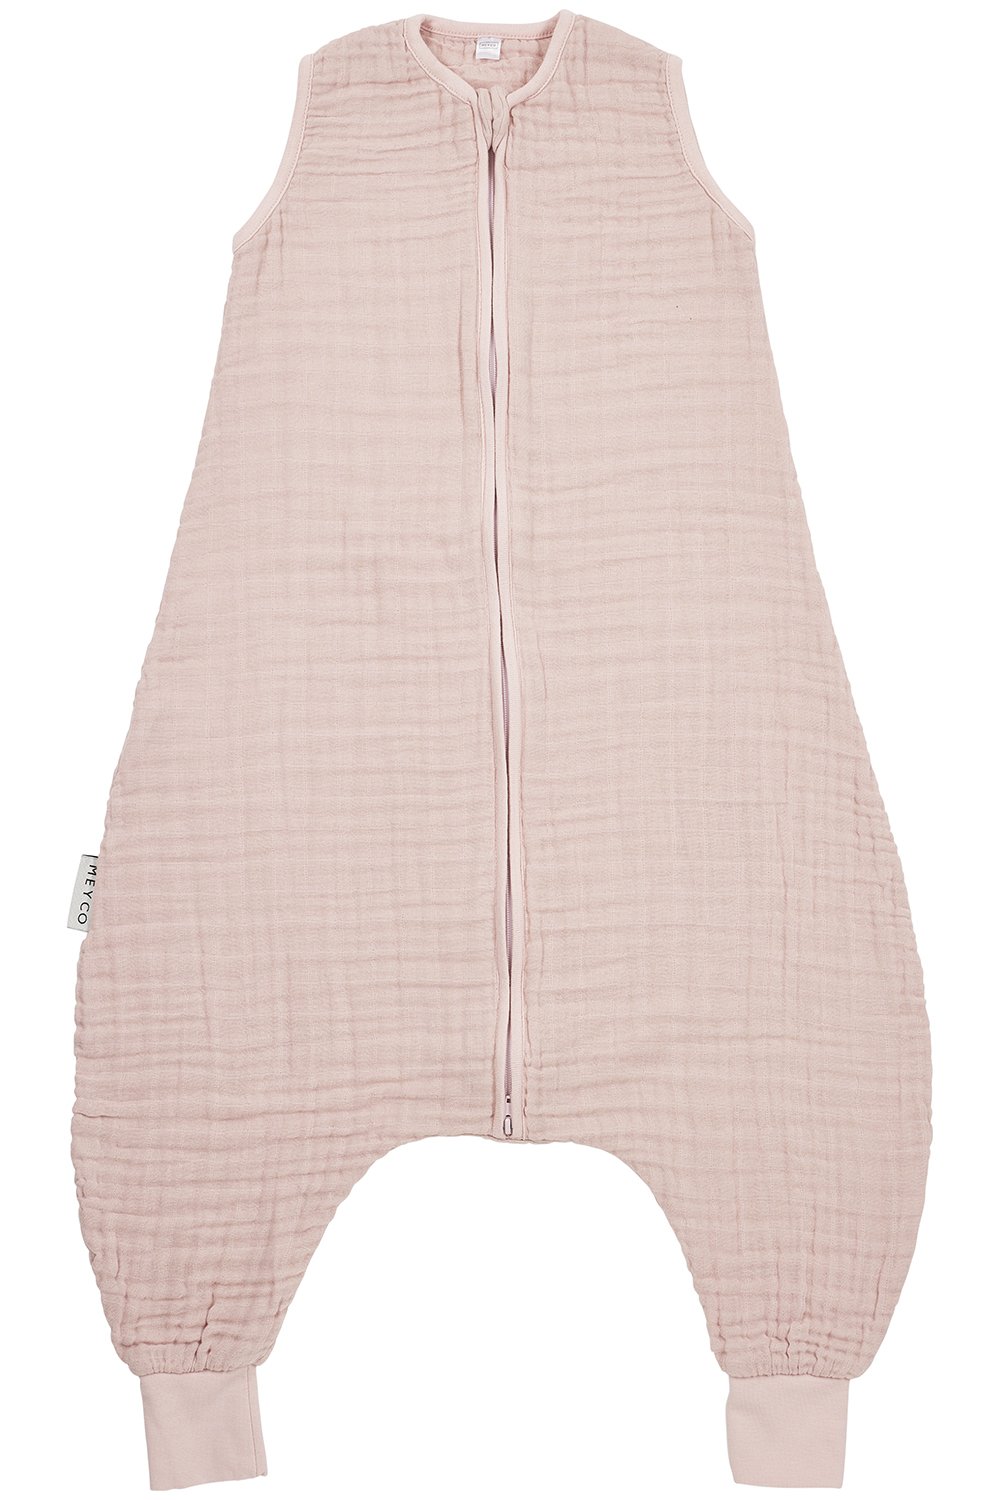 MEYCO Surpyjama bébé mousseline de coton uni soft pink